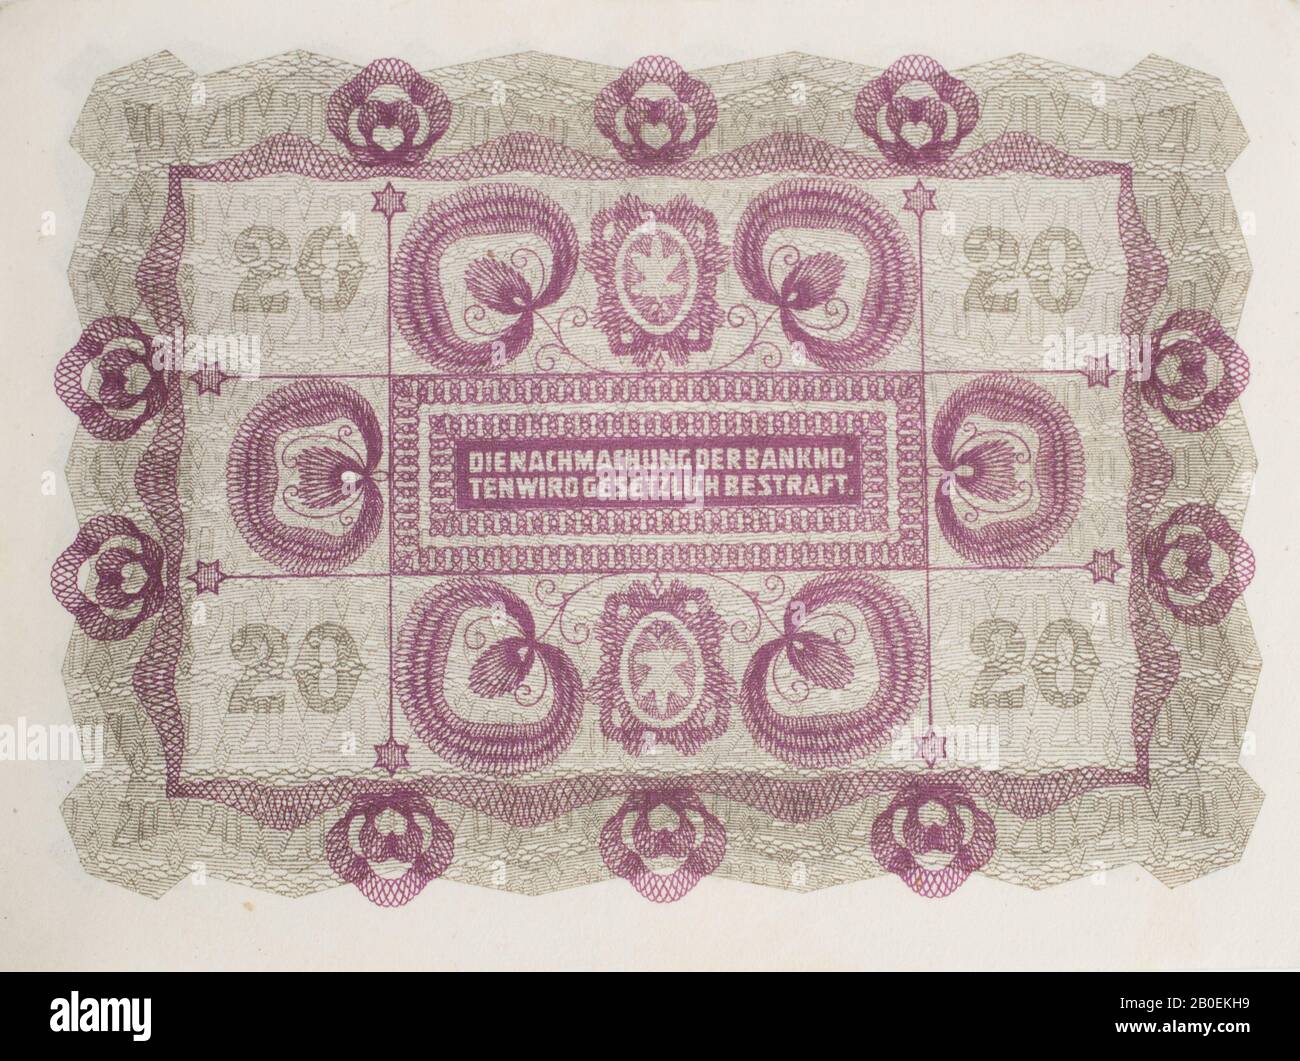 Il retro di una nota bancaria austriaca Kronen datata 1922 Foto Stock